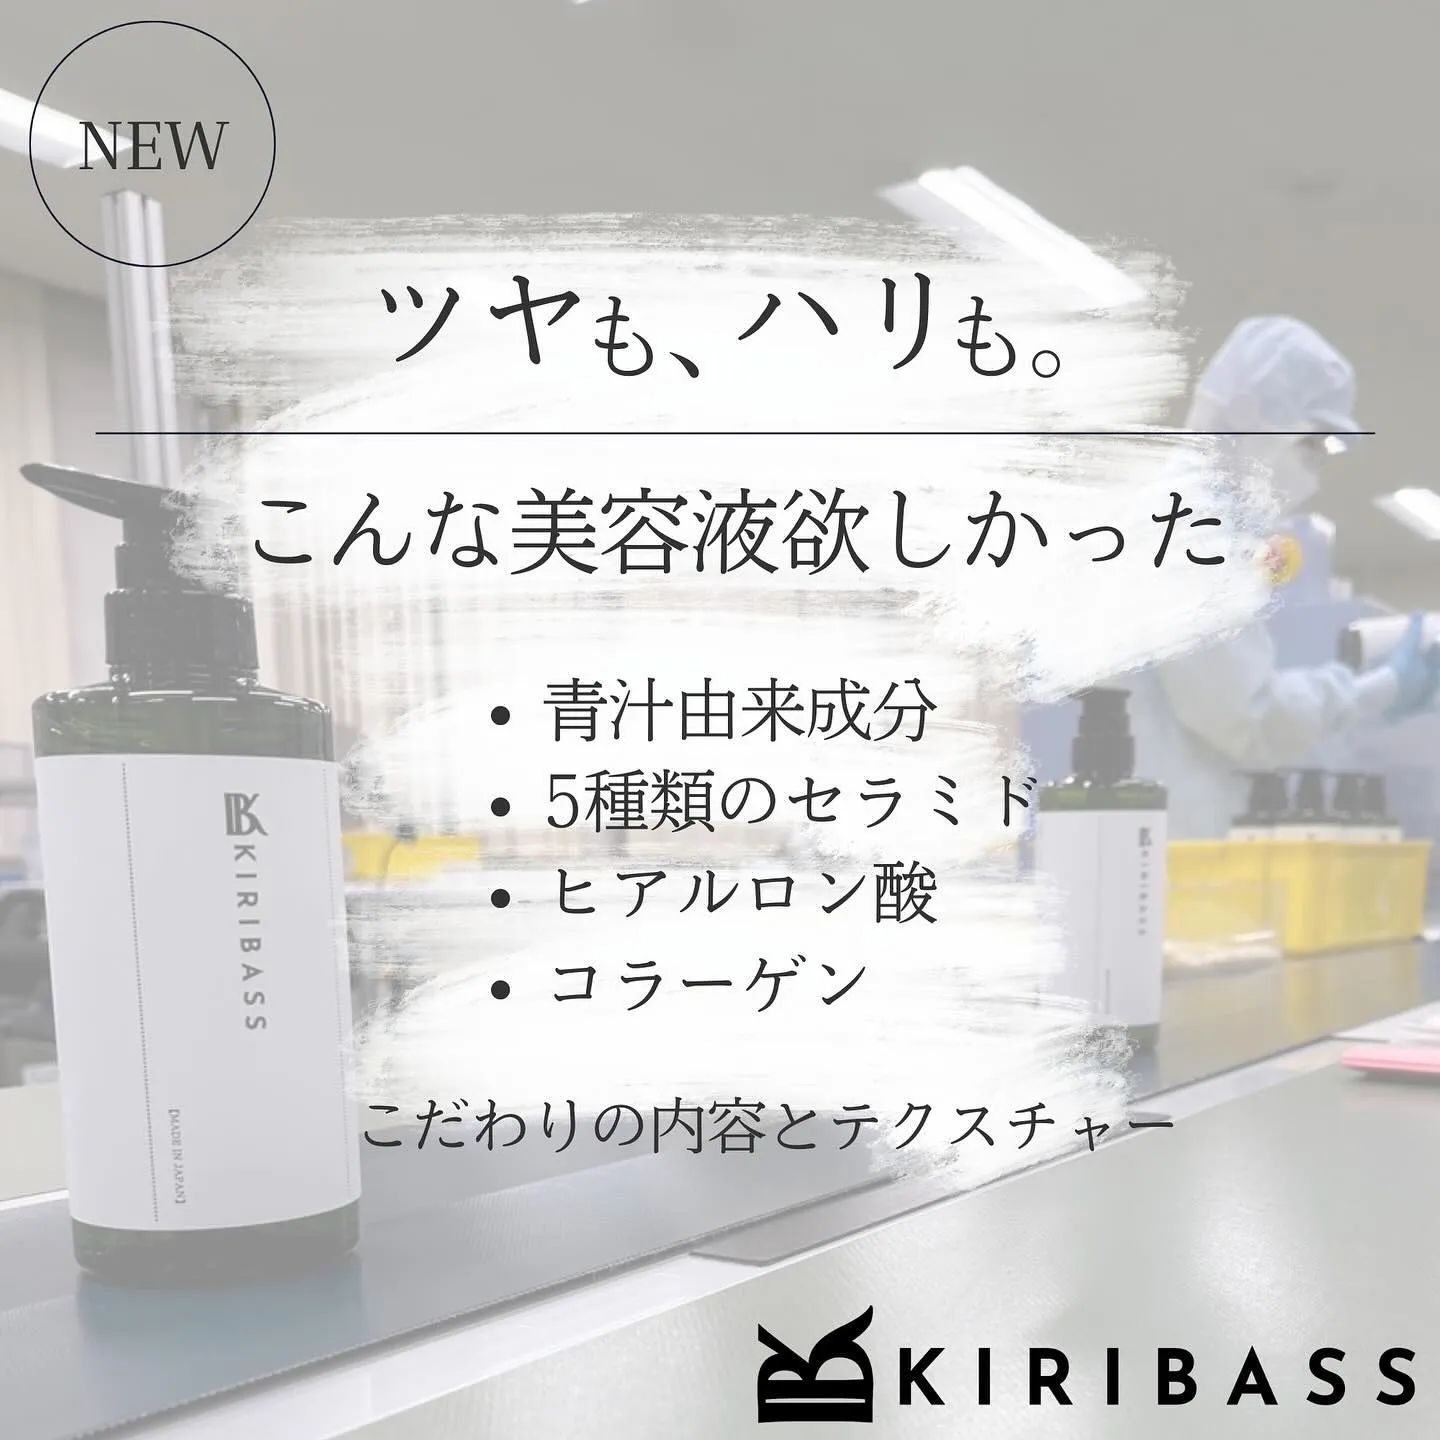 KIRIBASS化粧品、販売開始から1か月が経過しました。